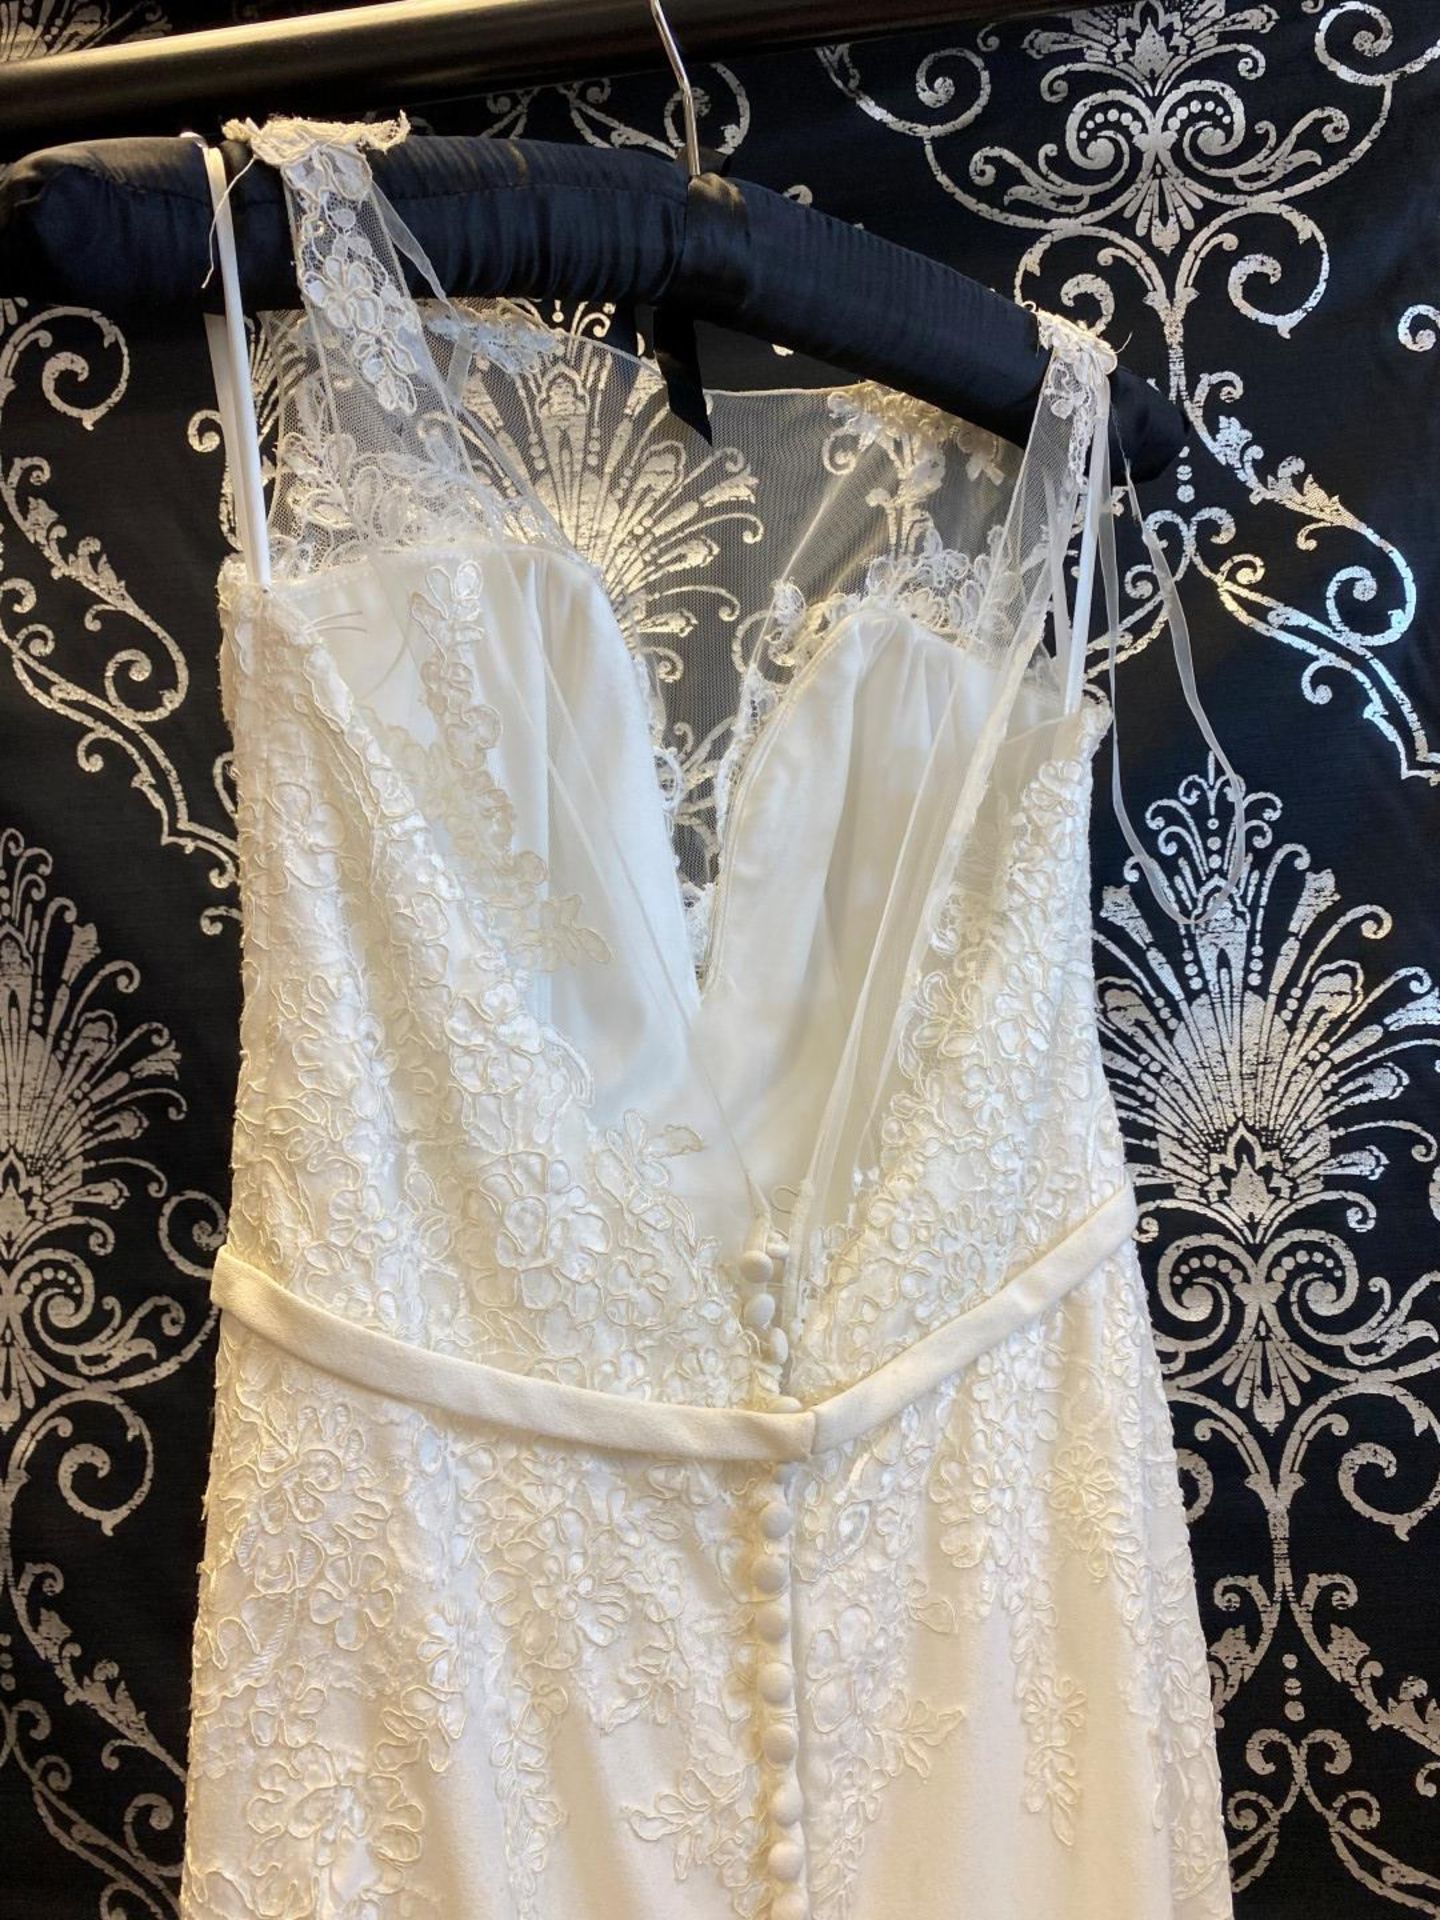 1 x MORI LEE Stunning Chiffon & Lace Biased Cut Designer Wedding Dress Bridal Gown RRP £1,500 UK 12 - Image 6 of 10